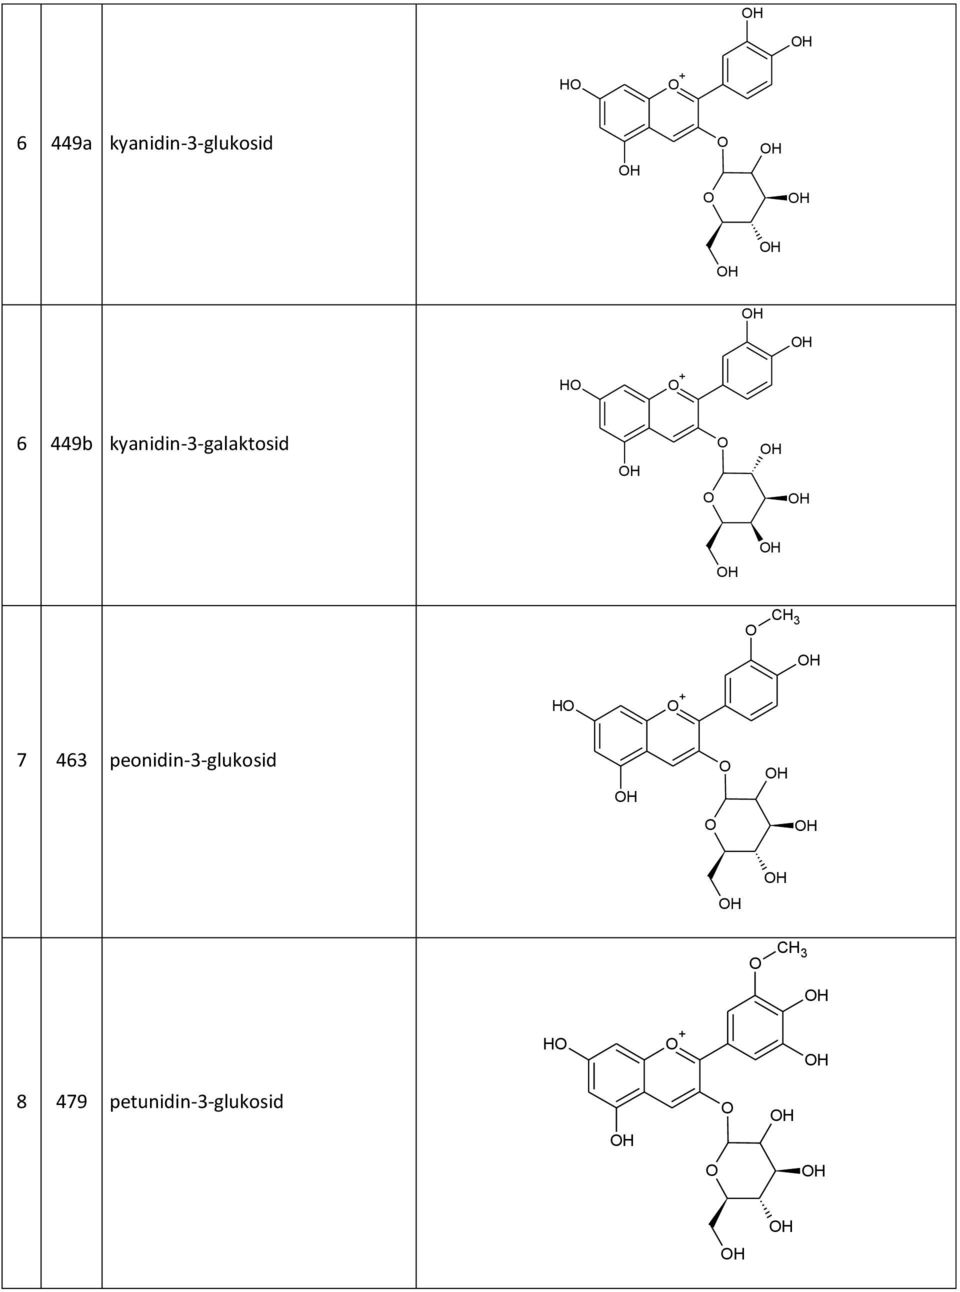 kyanidin-3-galaktosid H + 7